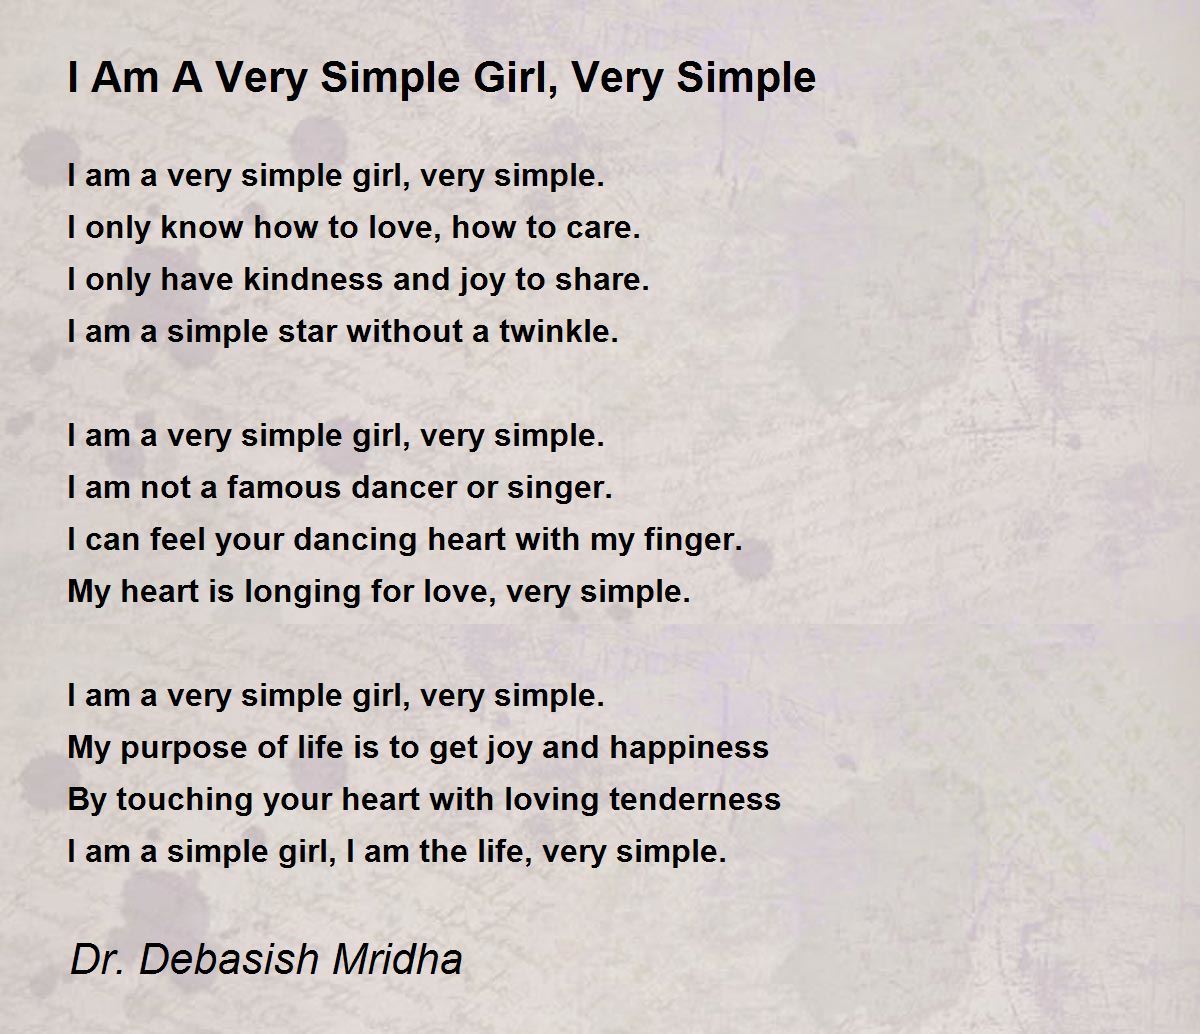 I Am A Very Simple Girl, Very Simple - I Am A Very Simple Girl, Very Simple  Poem by Dr. Debasish Mridha